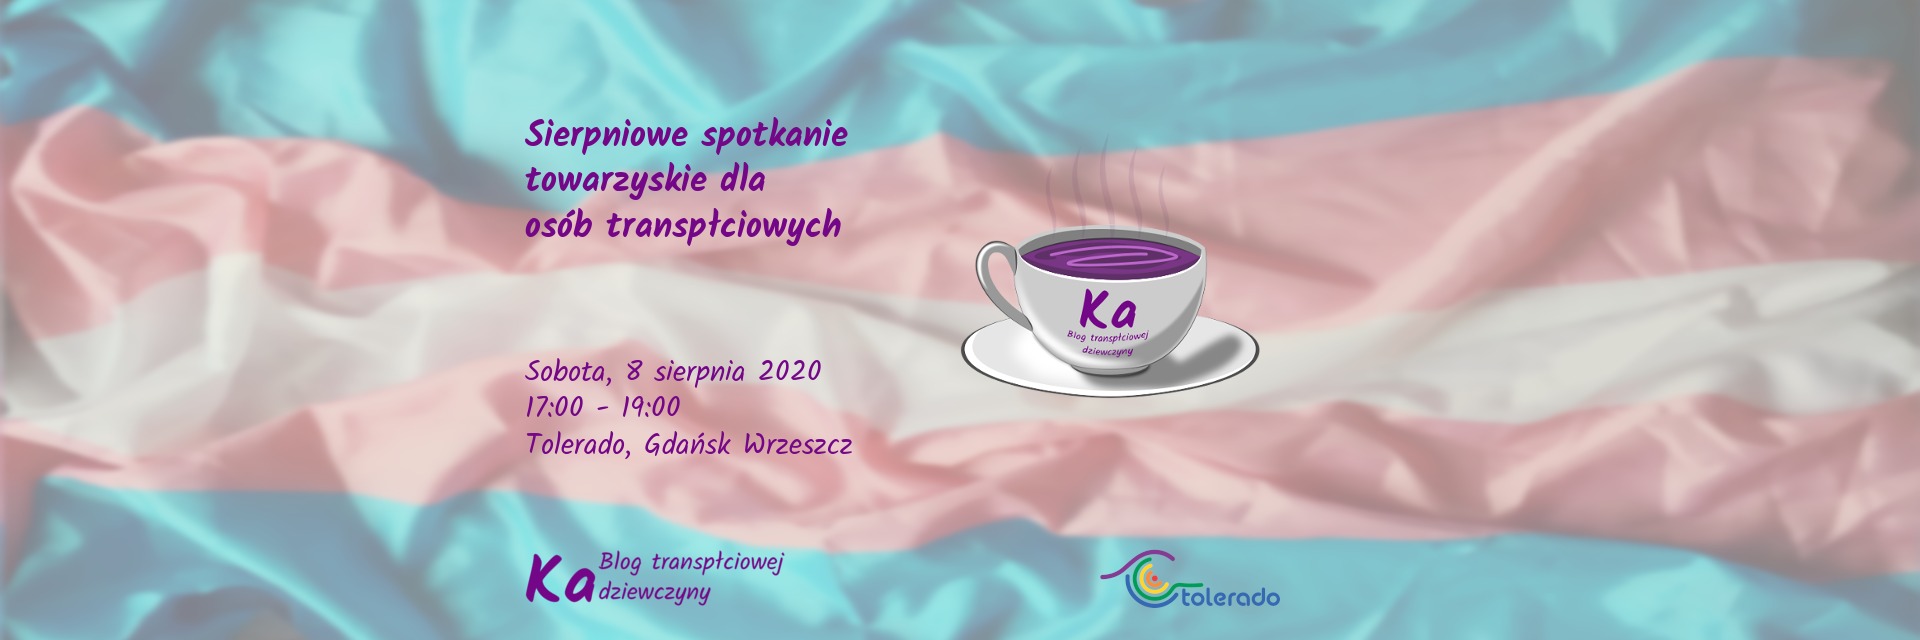 Sierpniowe spotkanie towarzyskie  dla osób transpłciowych, 8.8.2020